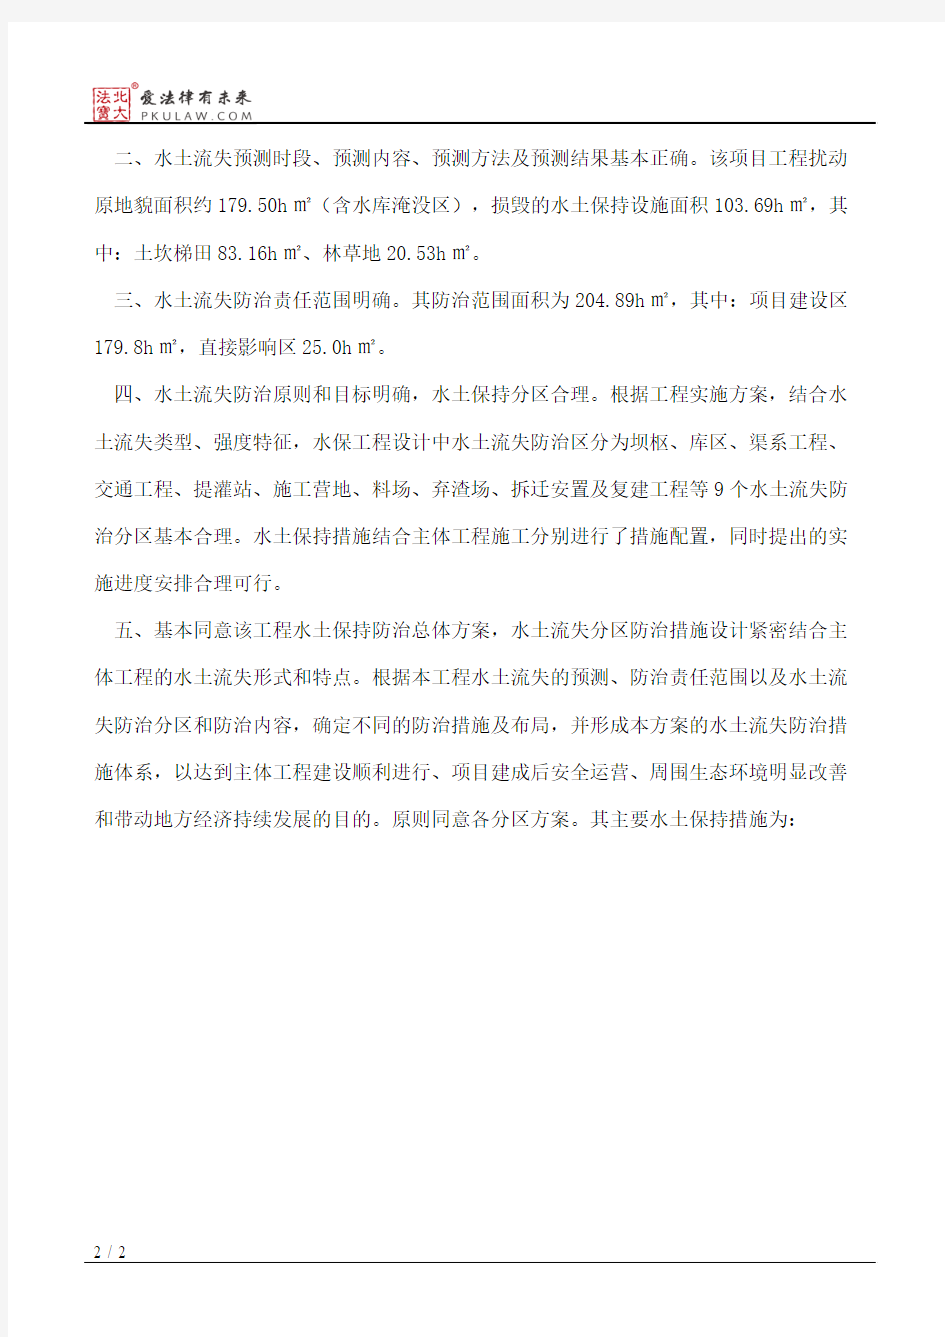 重庆市水利局关于重庆市垫江县盐井溪水库工程水土保持方案的批复